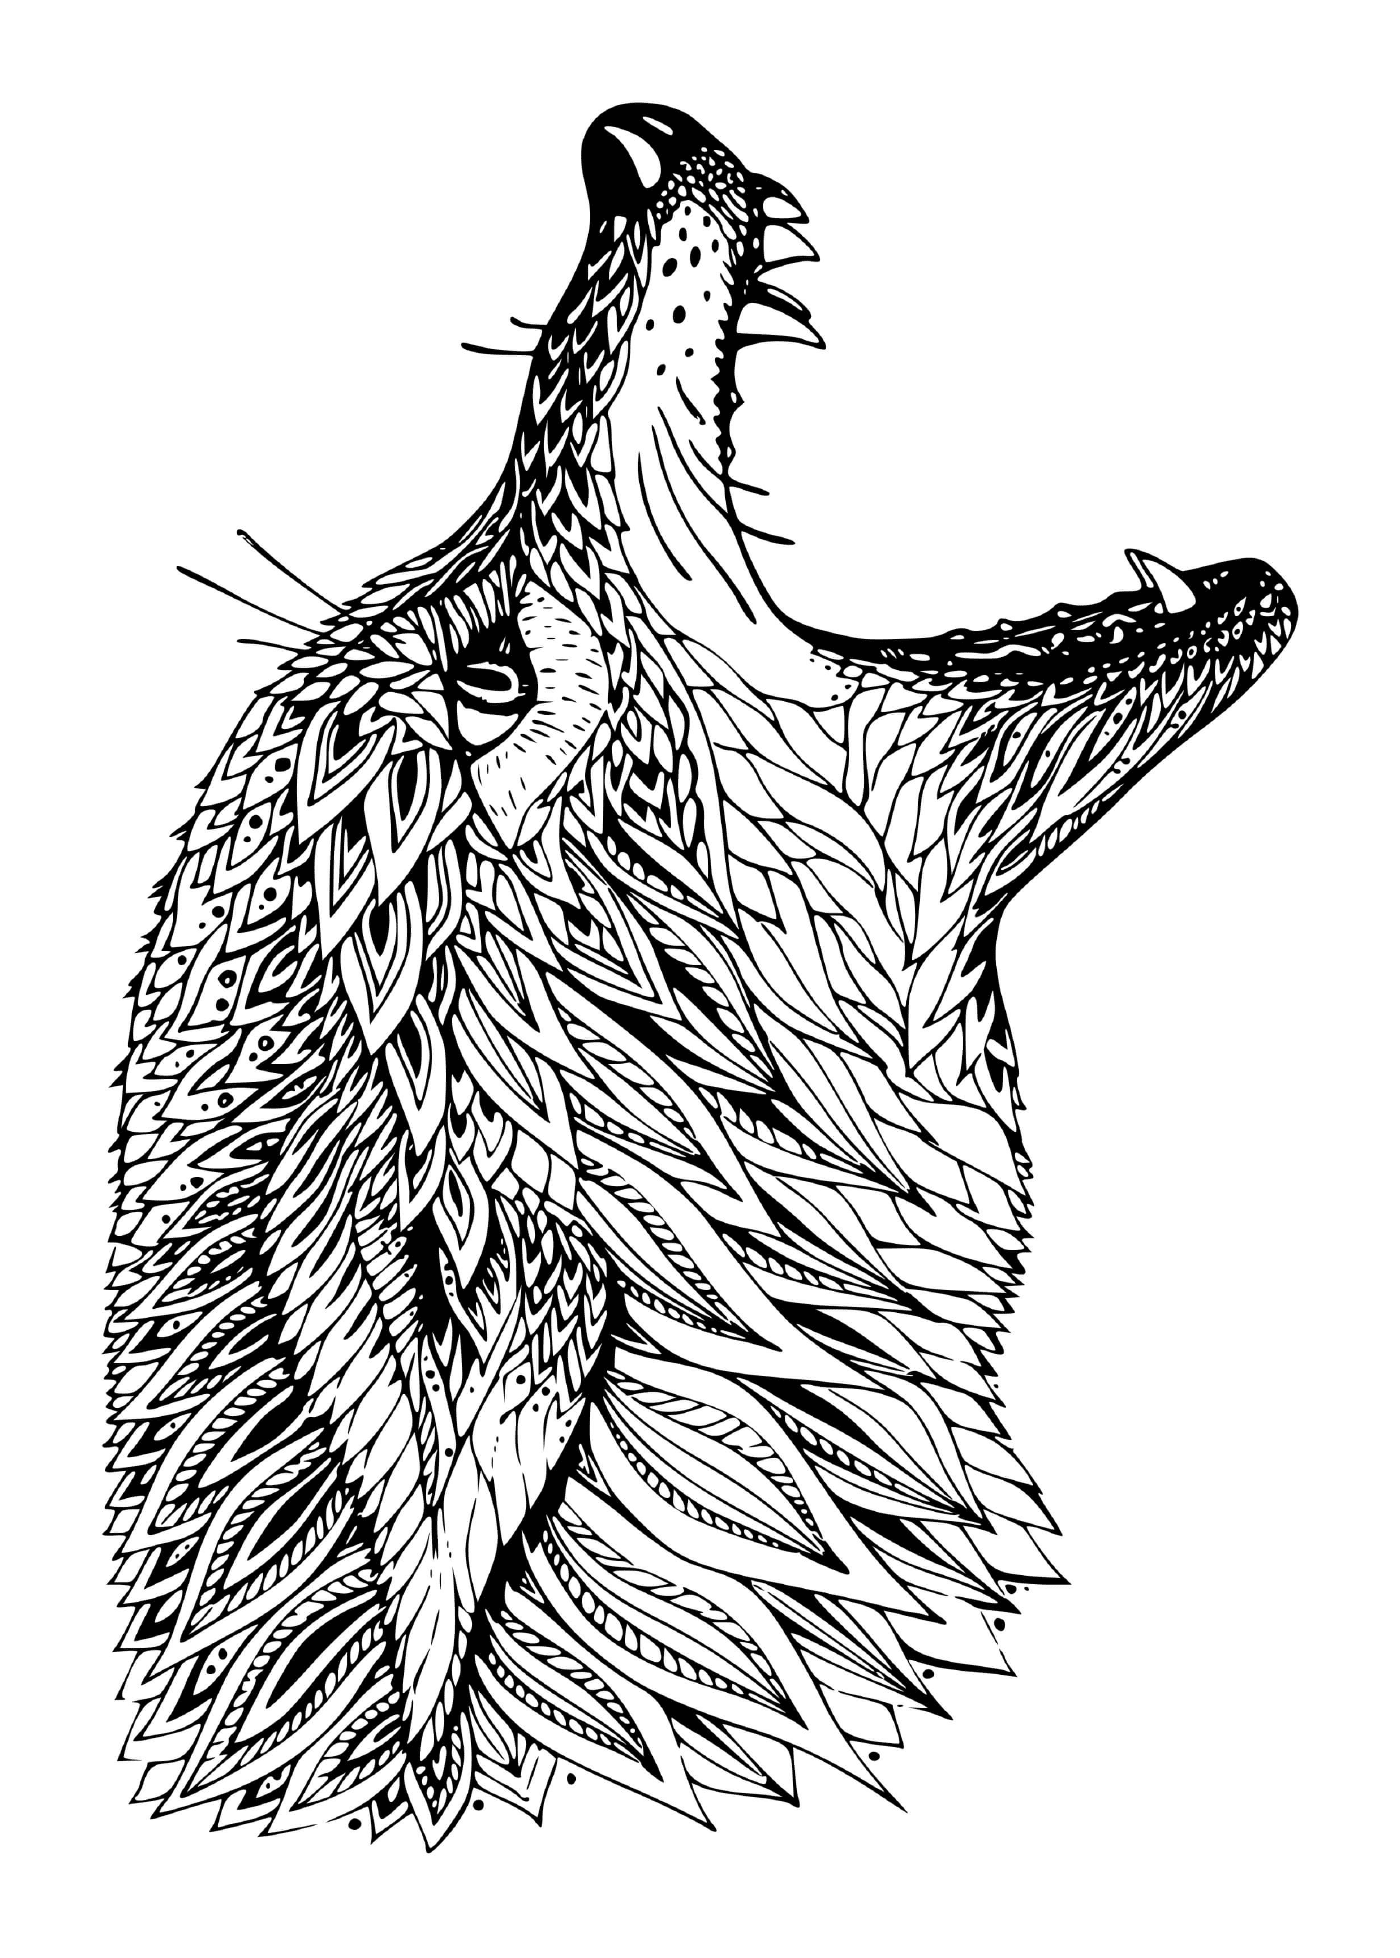  Cabeça de lobo de mandala detalhada 